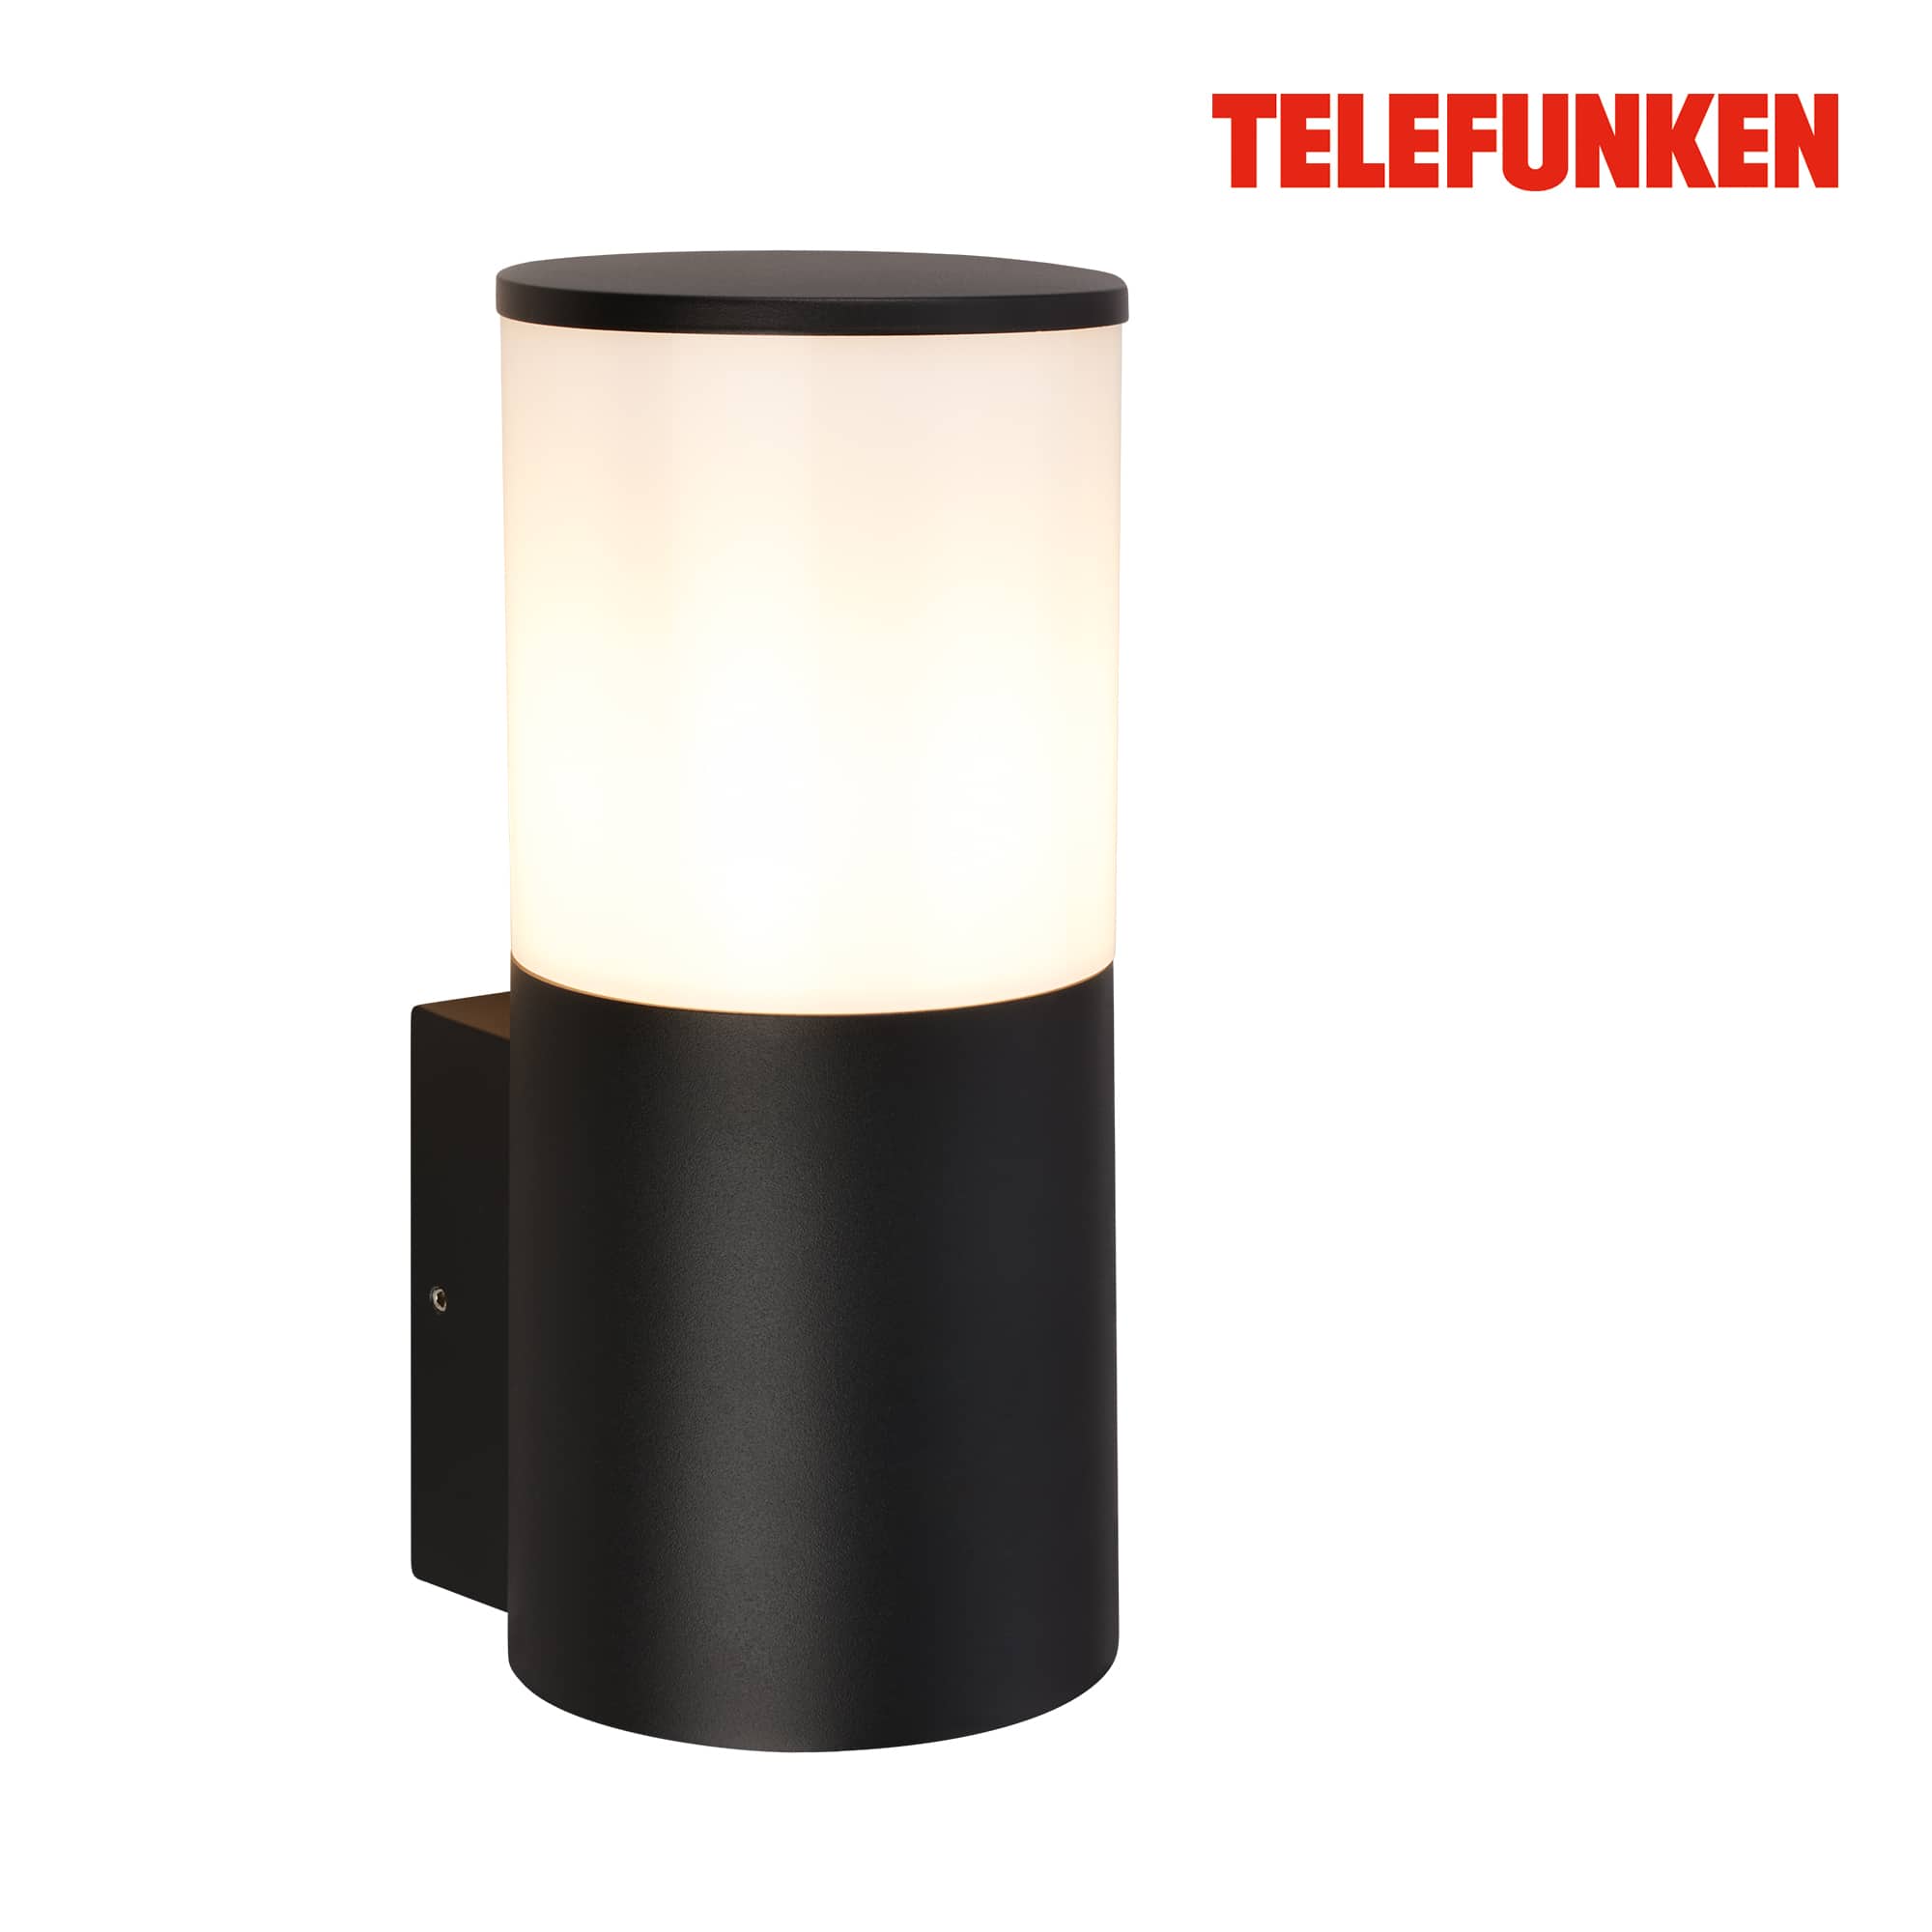 Applique LED Telefunken, Protection contre les éclaboussures et la poussière, On/Off